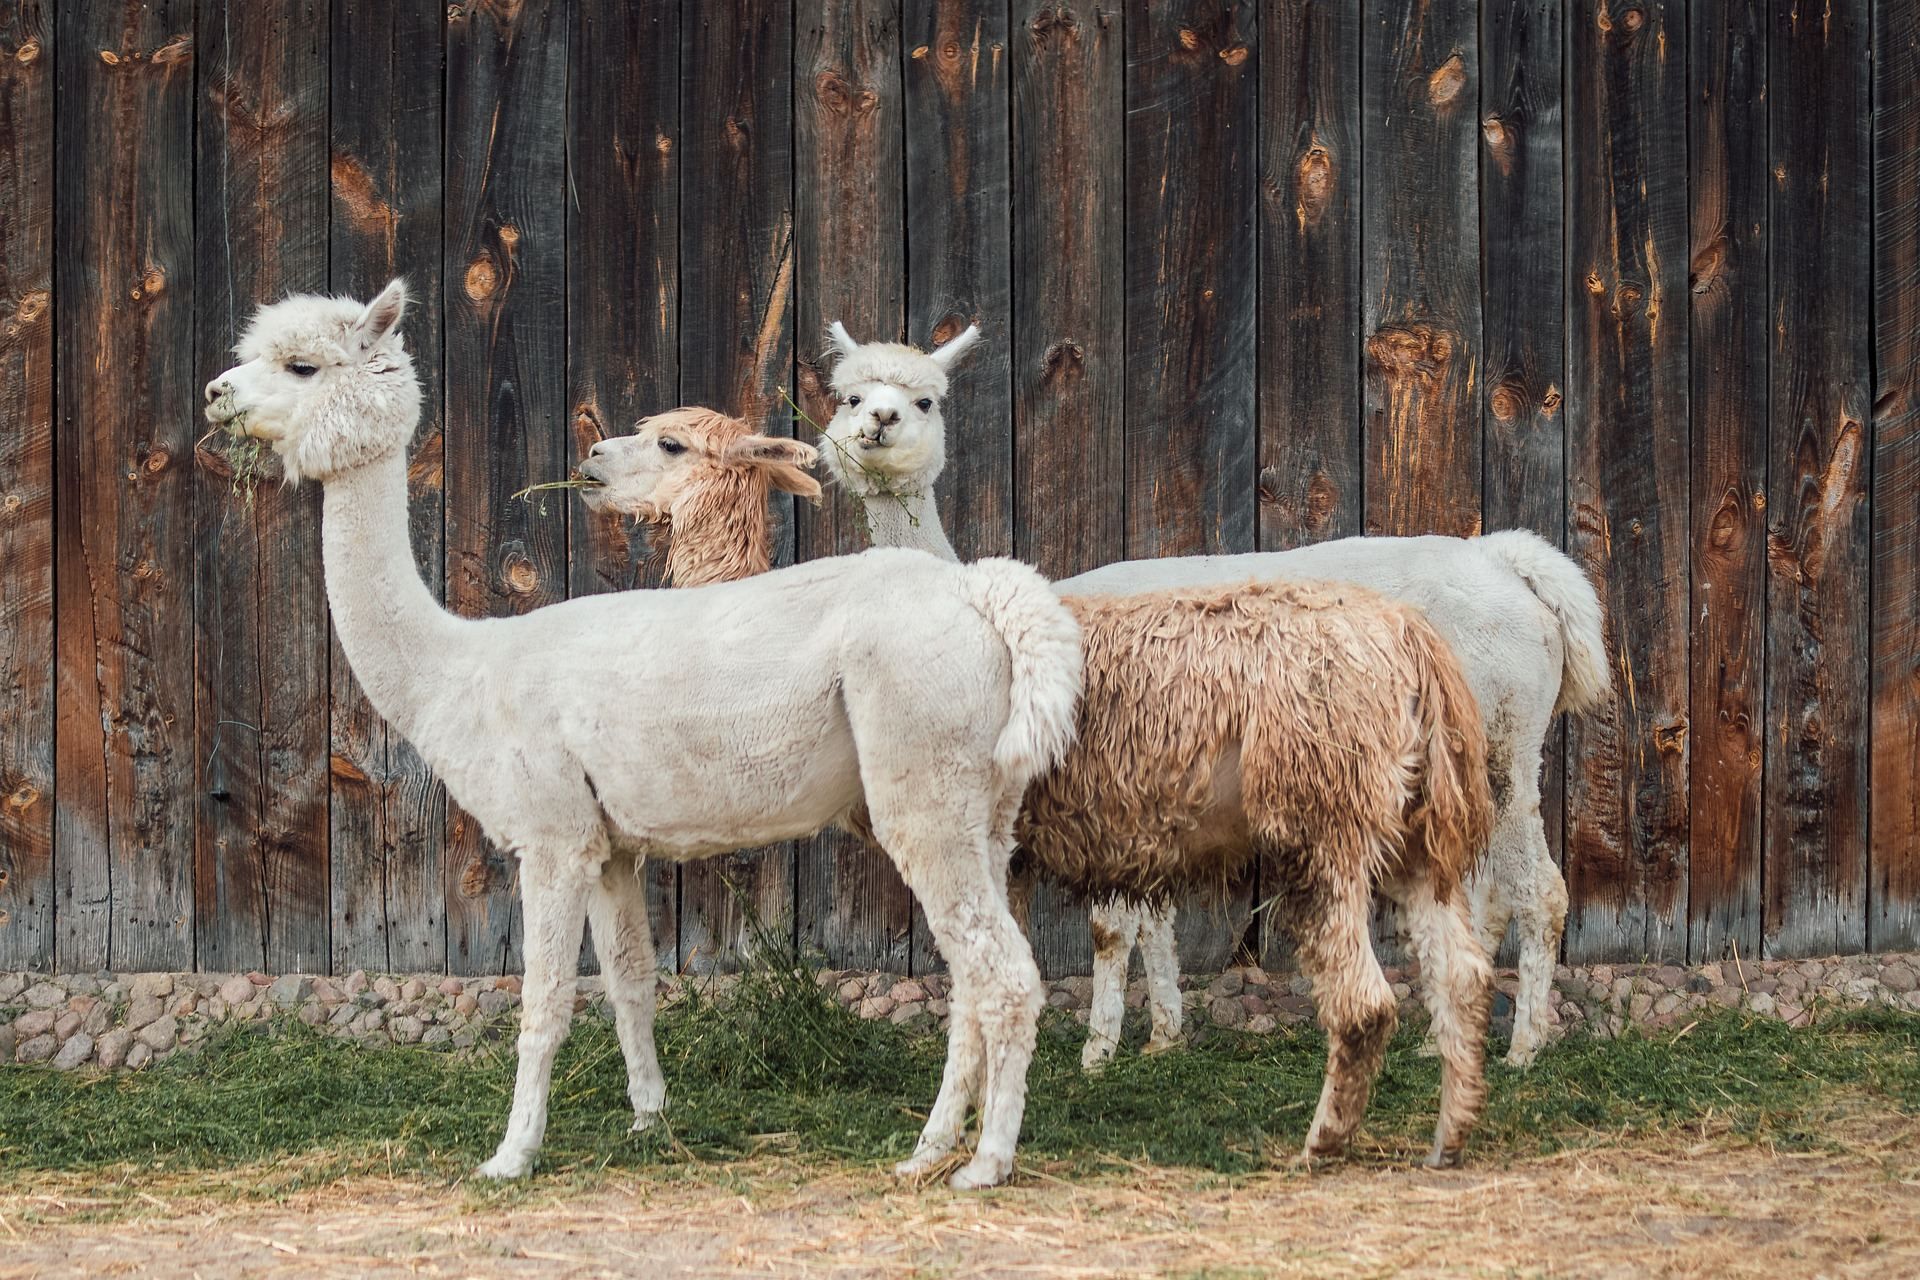 Полезный досуг: чеширская ферма проводит пилатес с альпаками – фото 